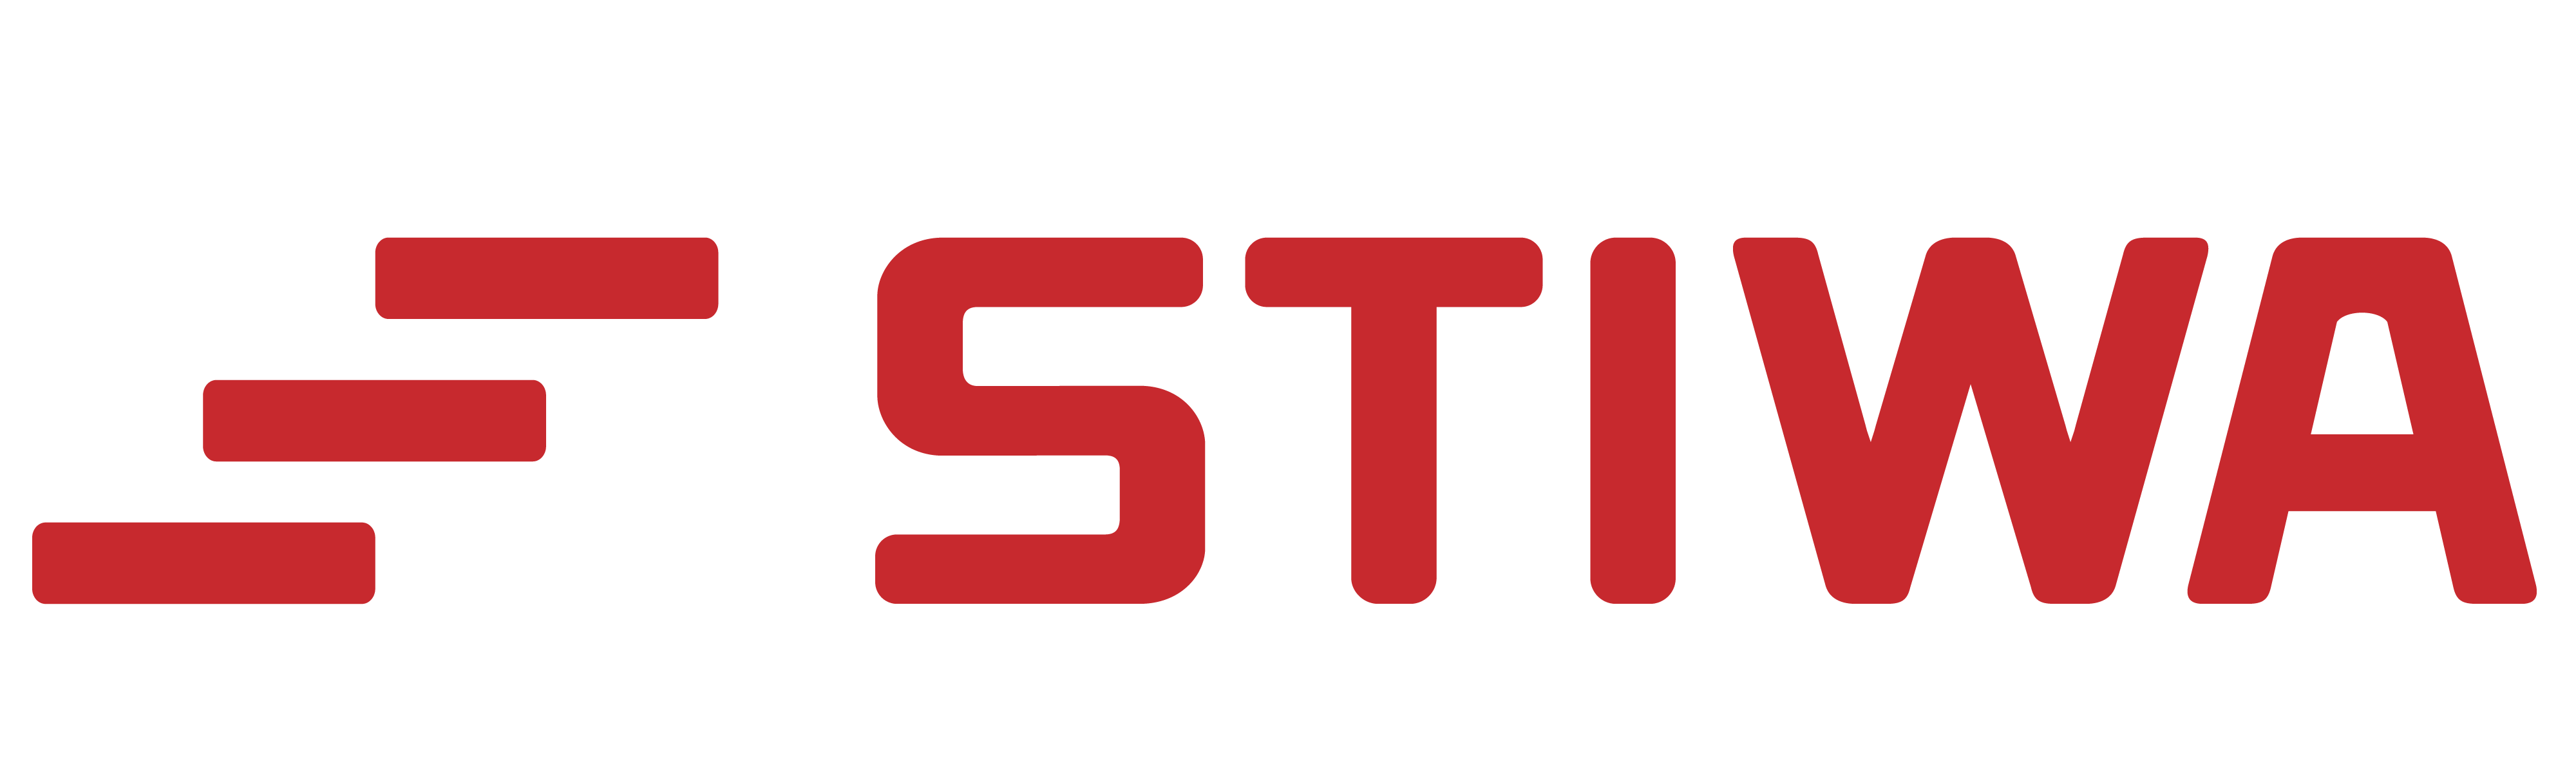 STIWA Holding GmbH